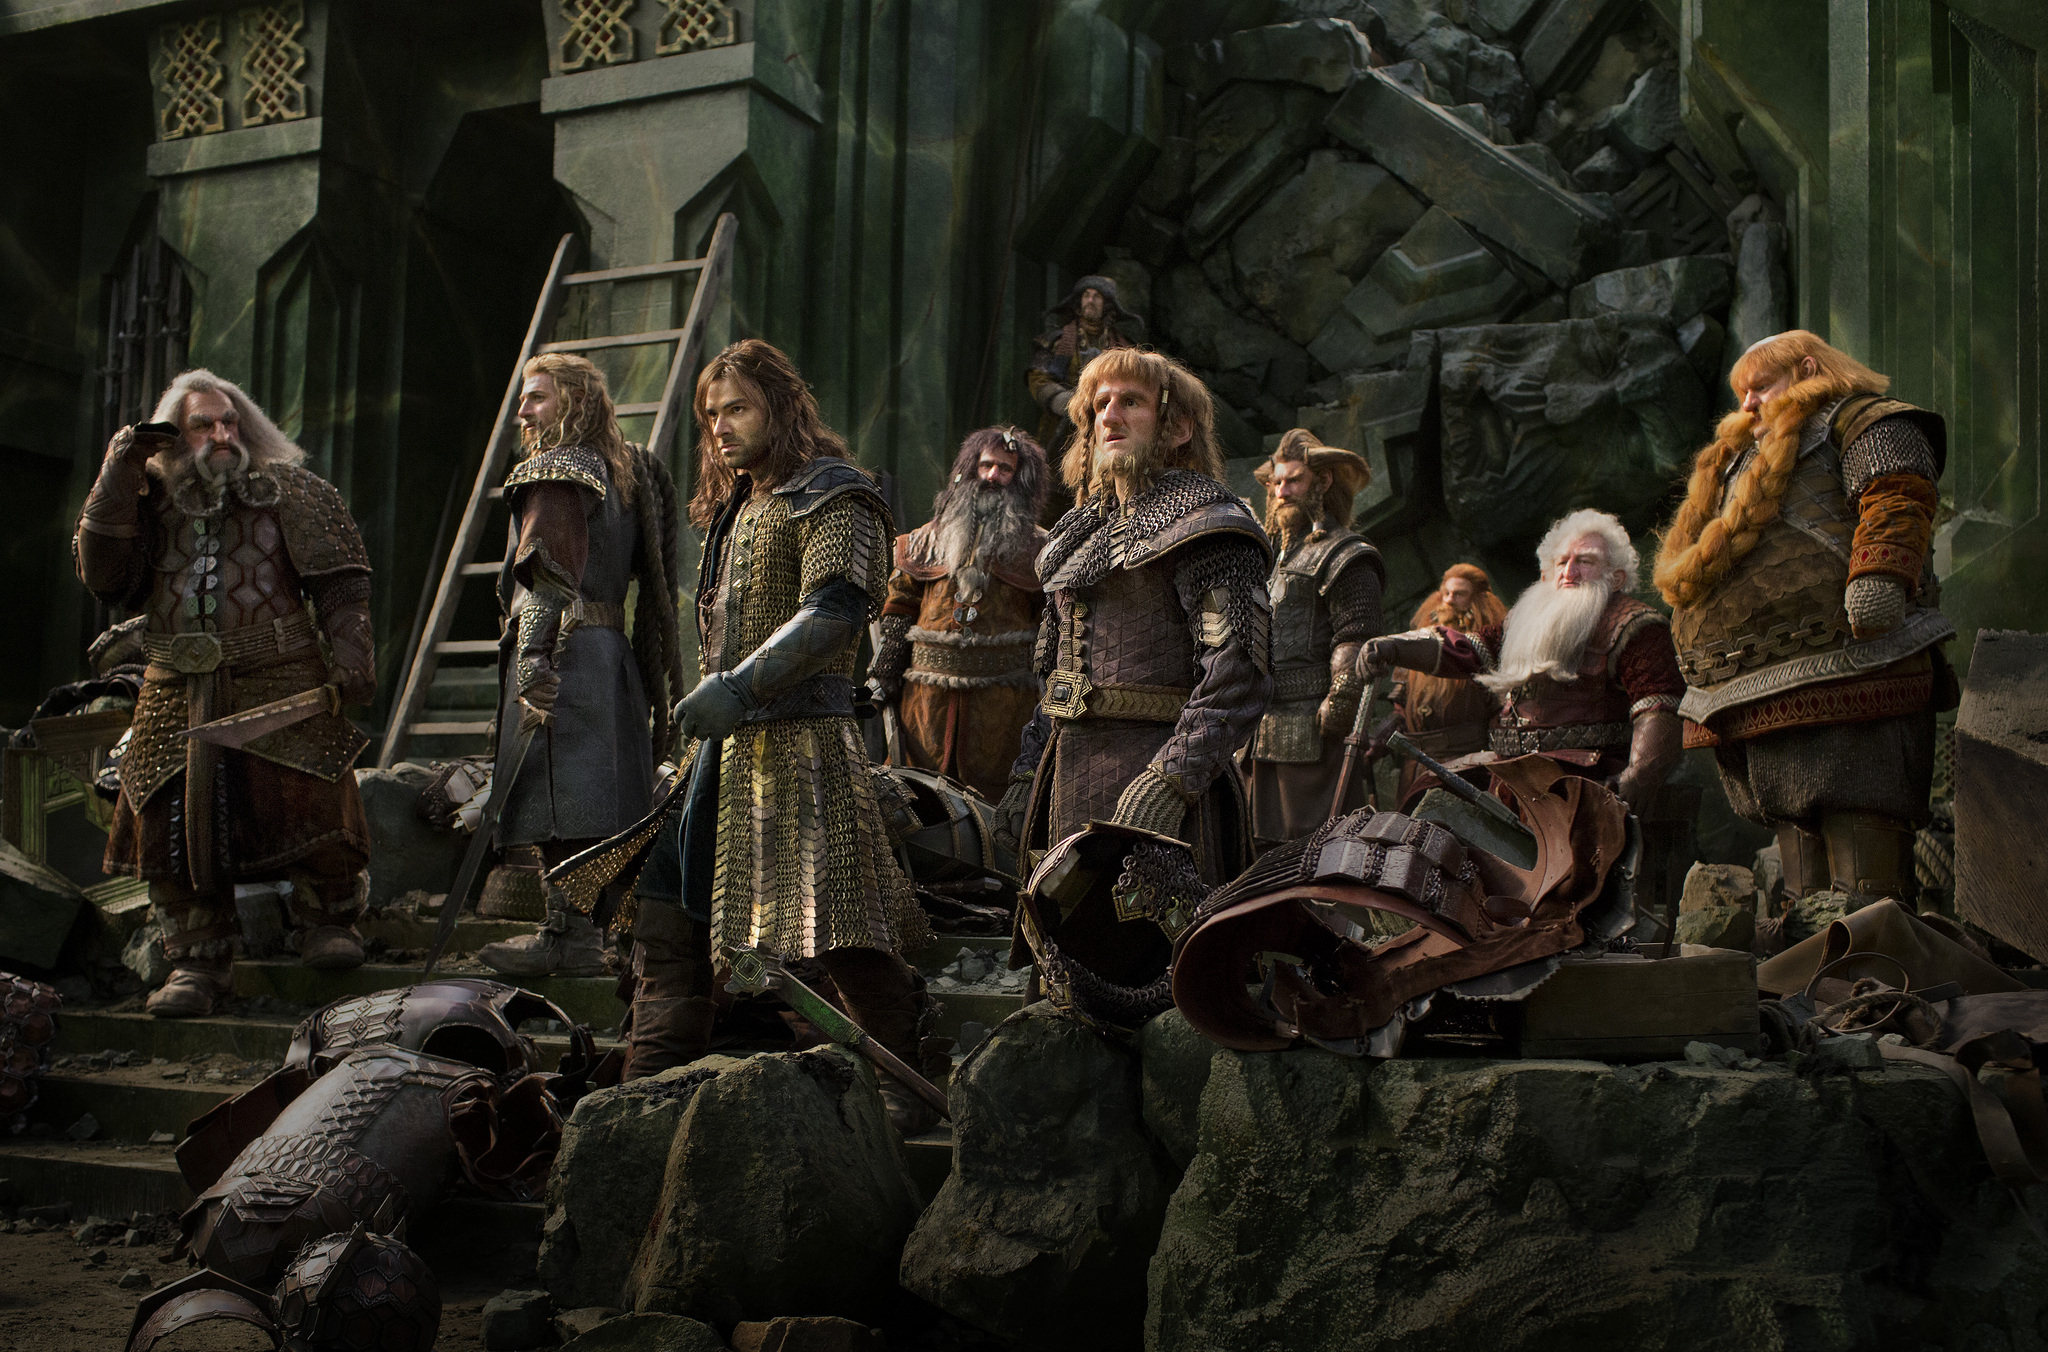 Xem Phim Người Hobbit 3: Đại chiến 5 cánh quân, The Hobbit 3: The Battle of the Five Armies 2014